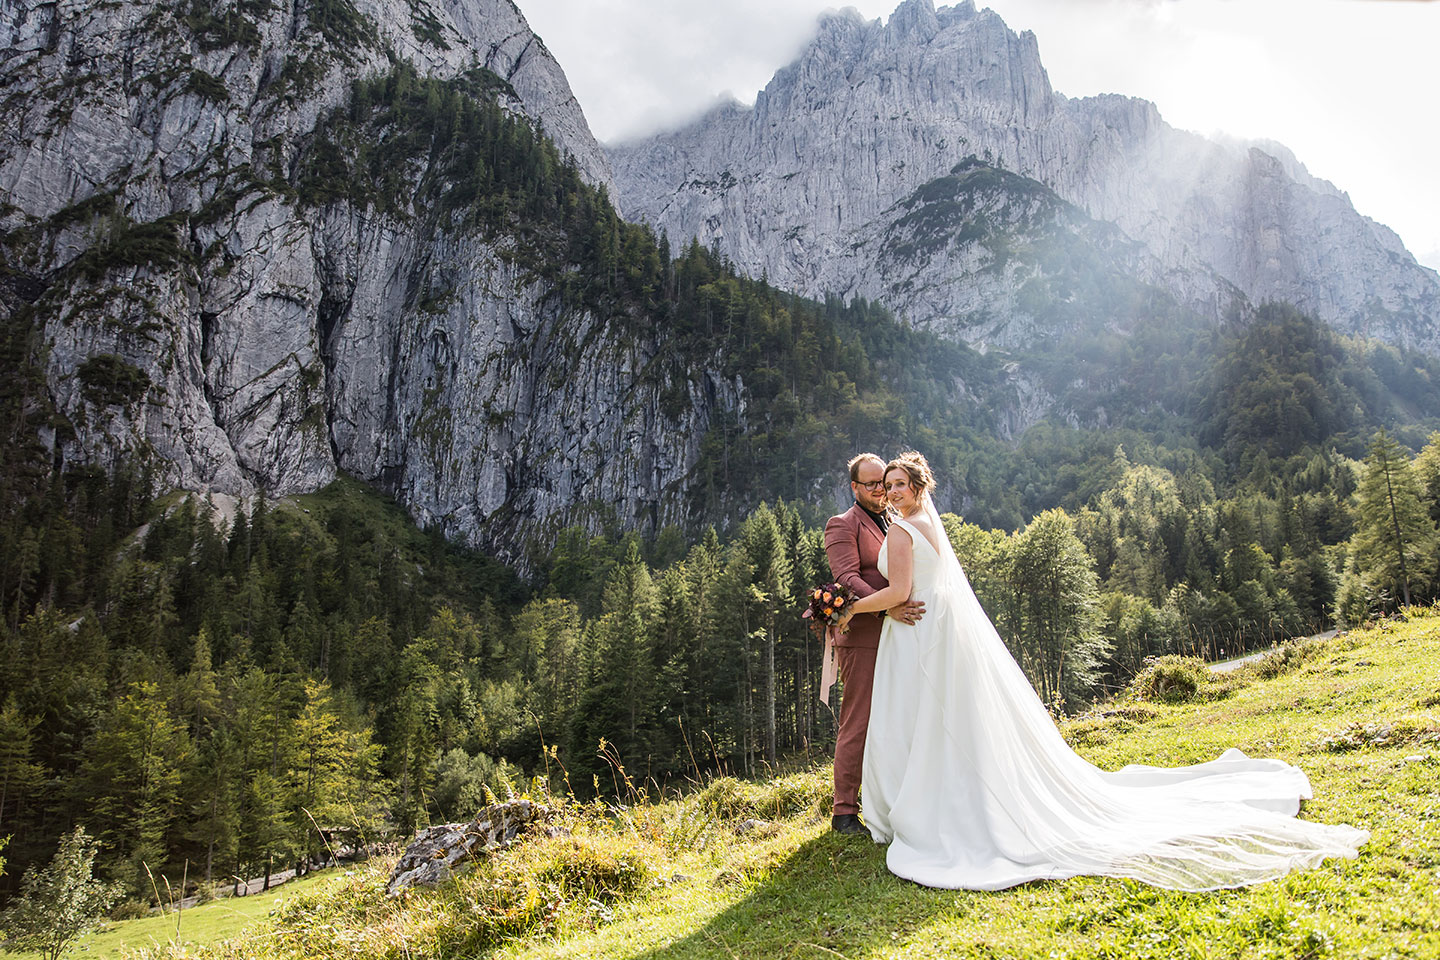 Bruiloft in de Wilder Kaiser bergen van Tirol, Oostenrijk